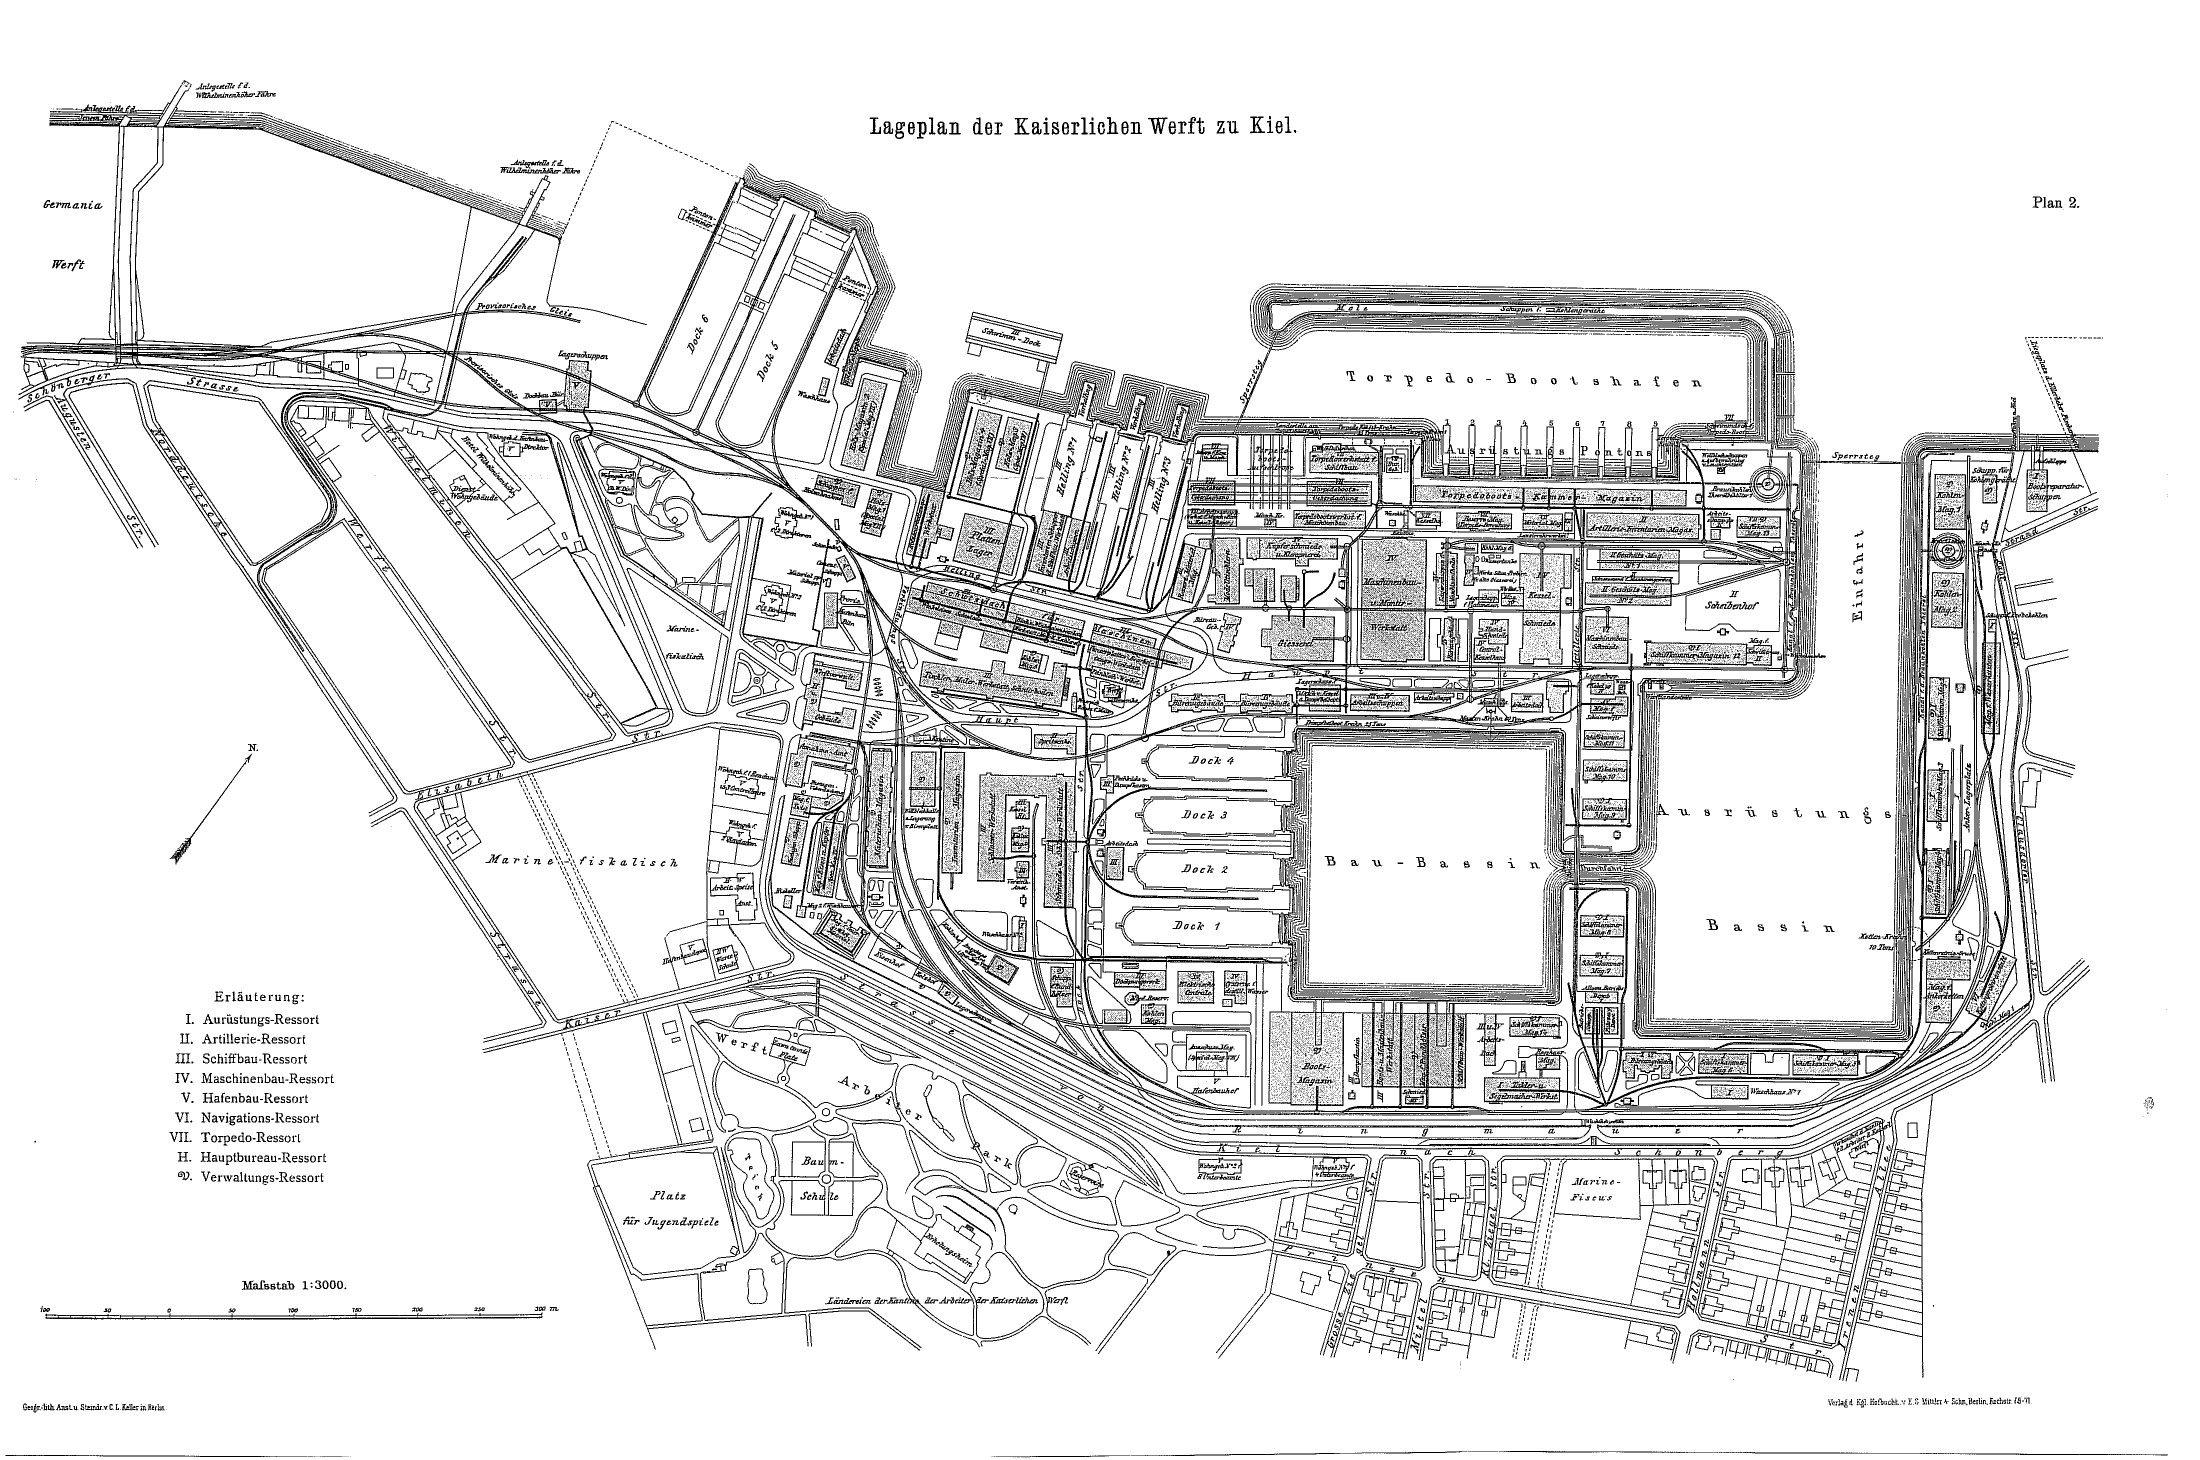 Plan of Kaiserliche Werft Kiel, Germany, circa 1900